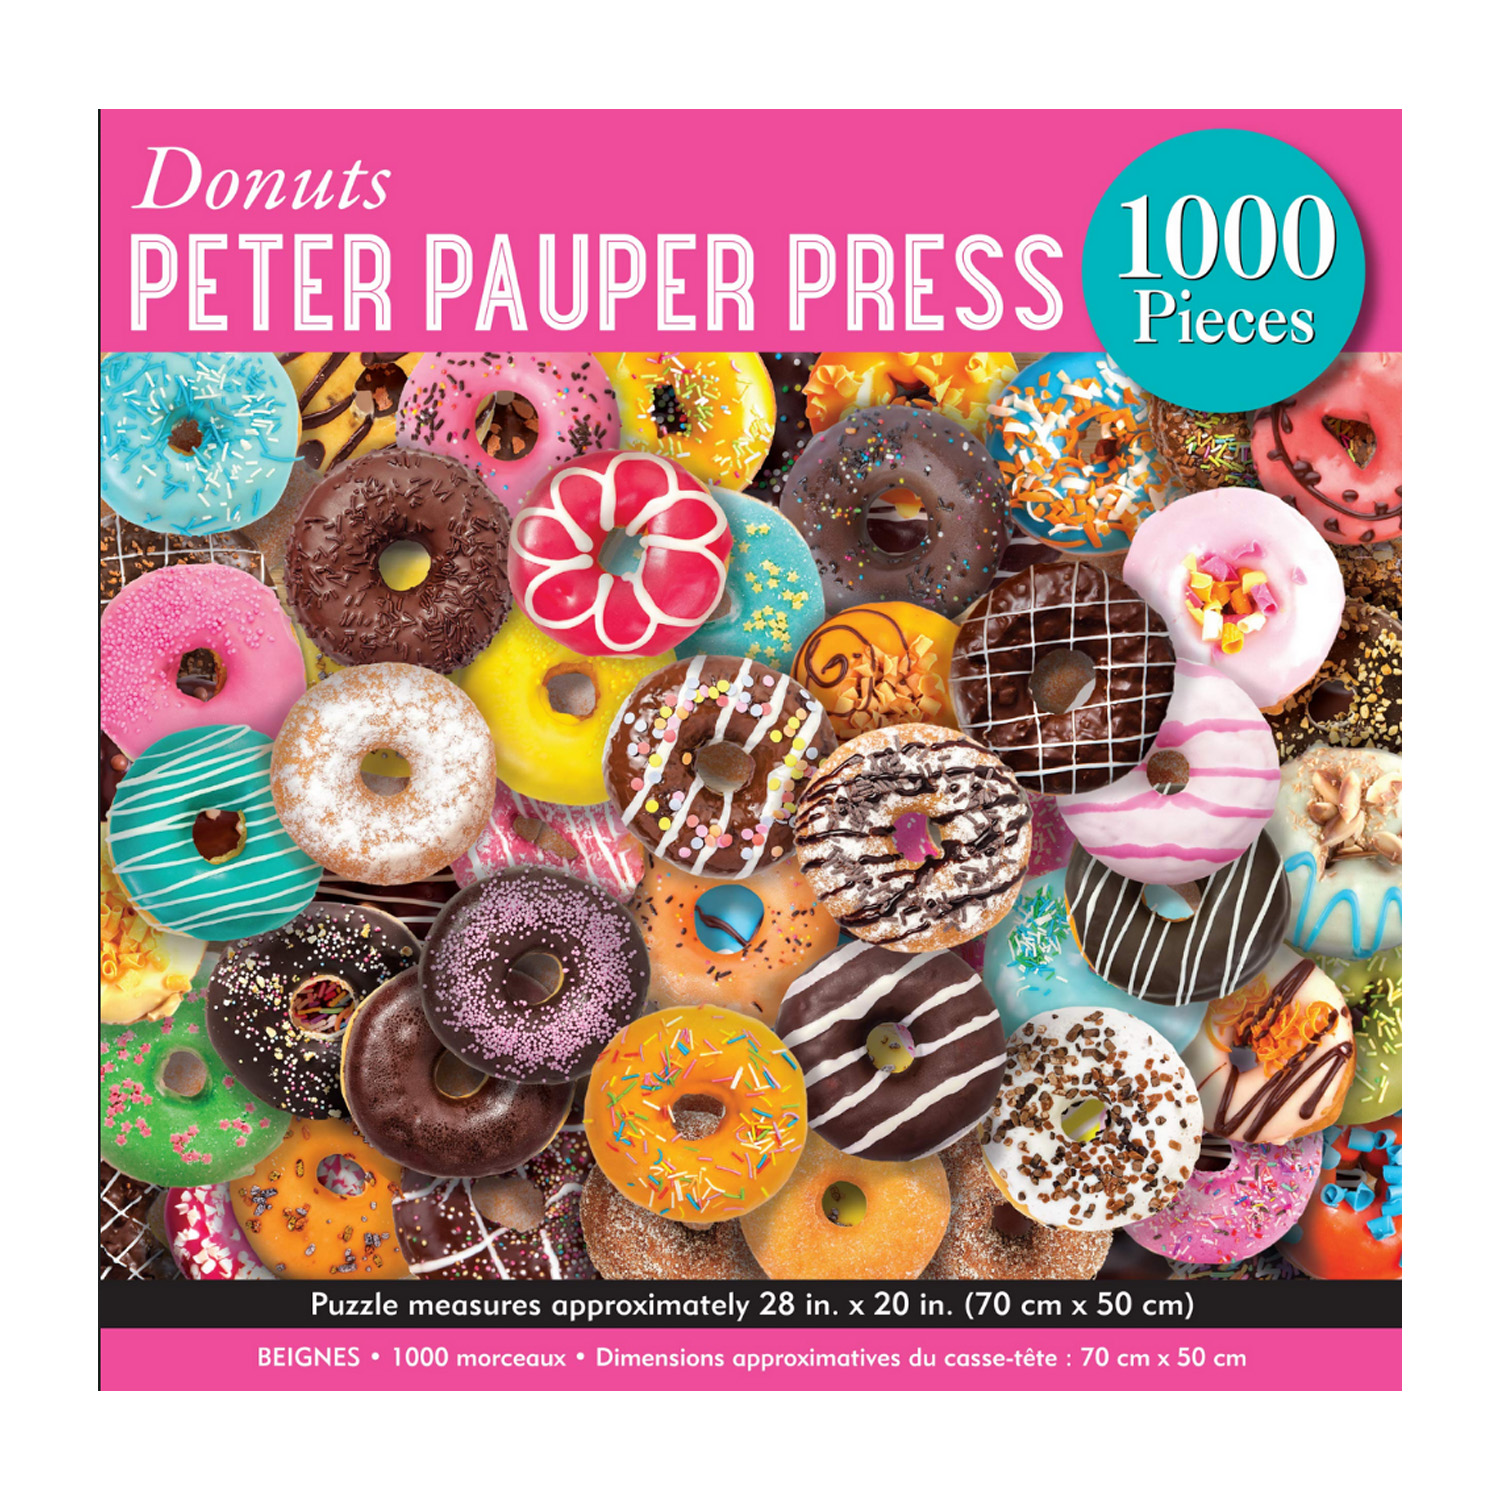 Peter Pauper Press 1000 Piece Puzzle